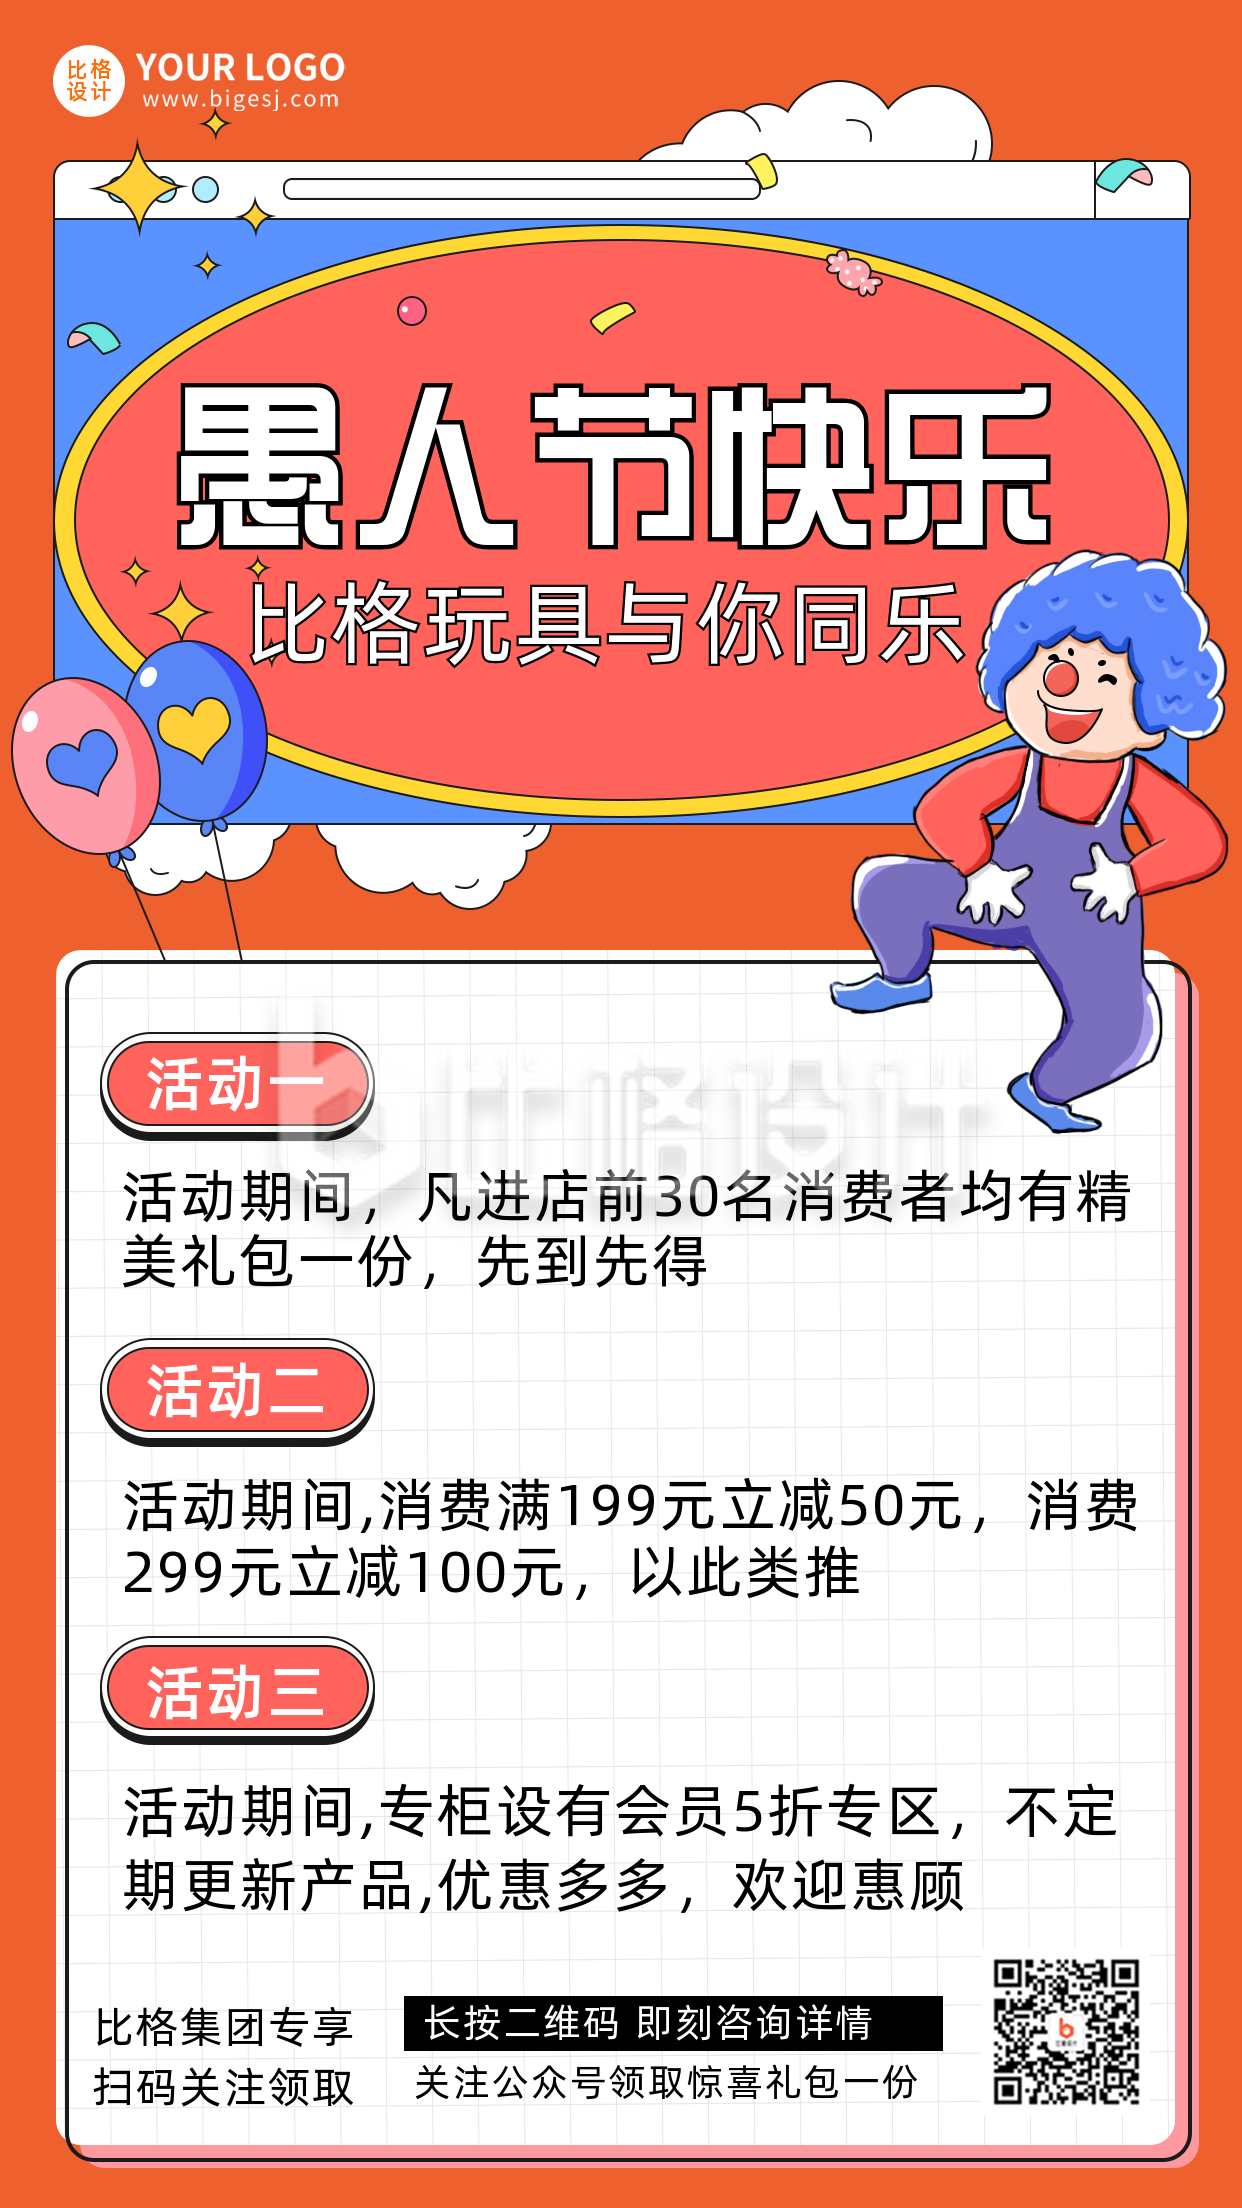 愚人节节日促销宣传手机海报